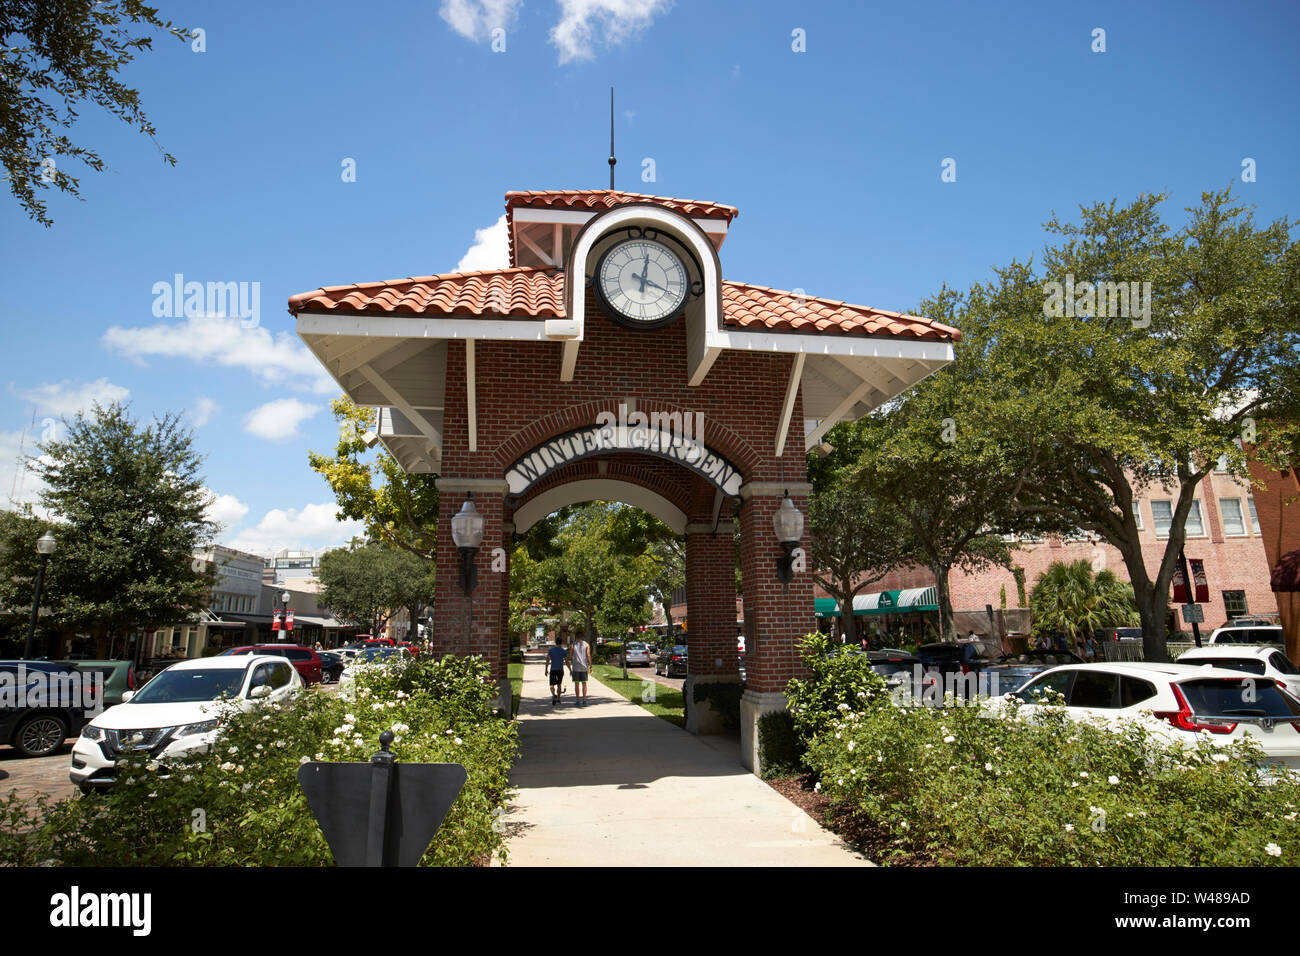 Die historische Innenstadt von Wintergarten auf der West orange Trail in der Nähe von Orlando, Florida fl usa Vereinigte Staaten von Amerika Stockfoto